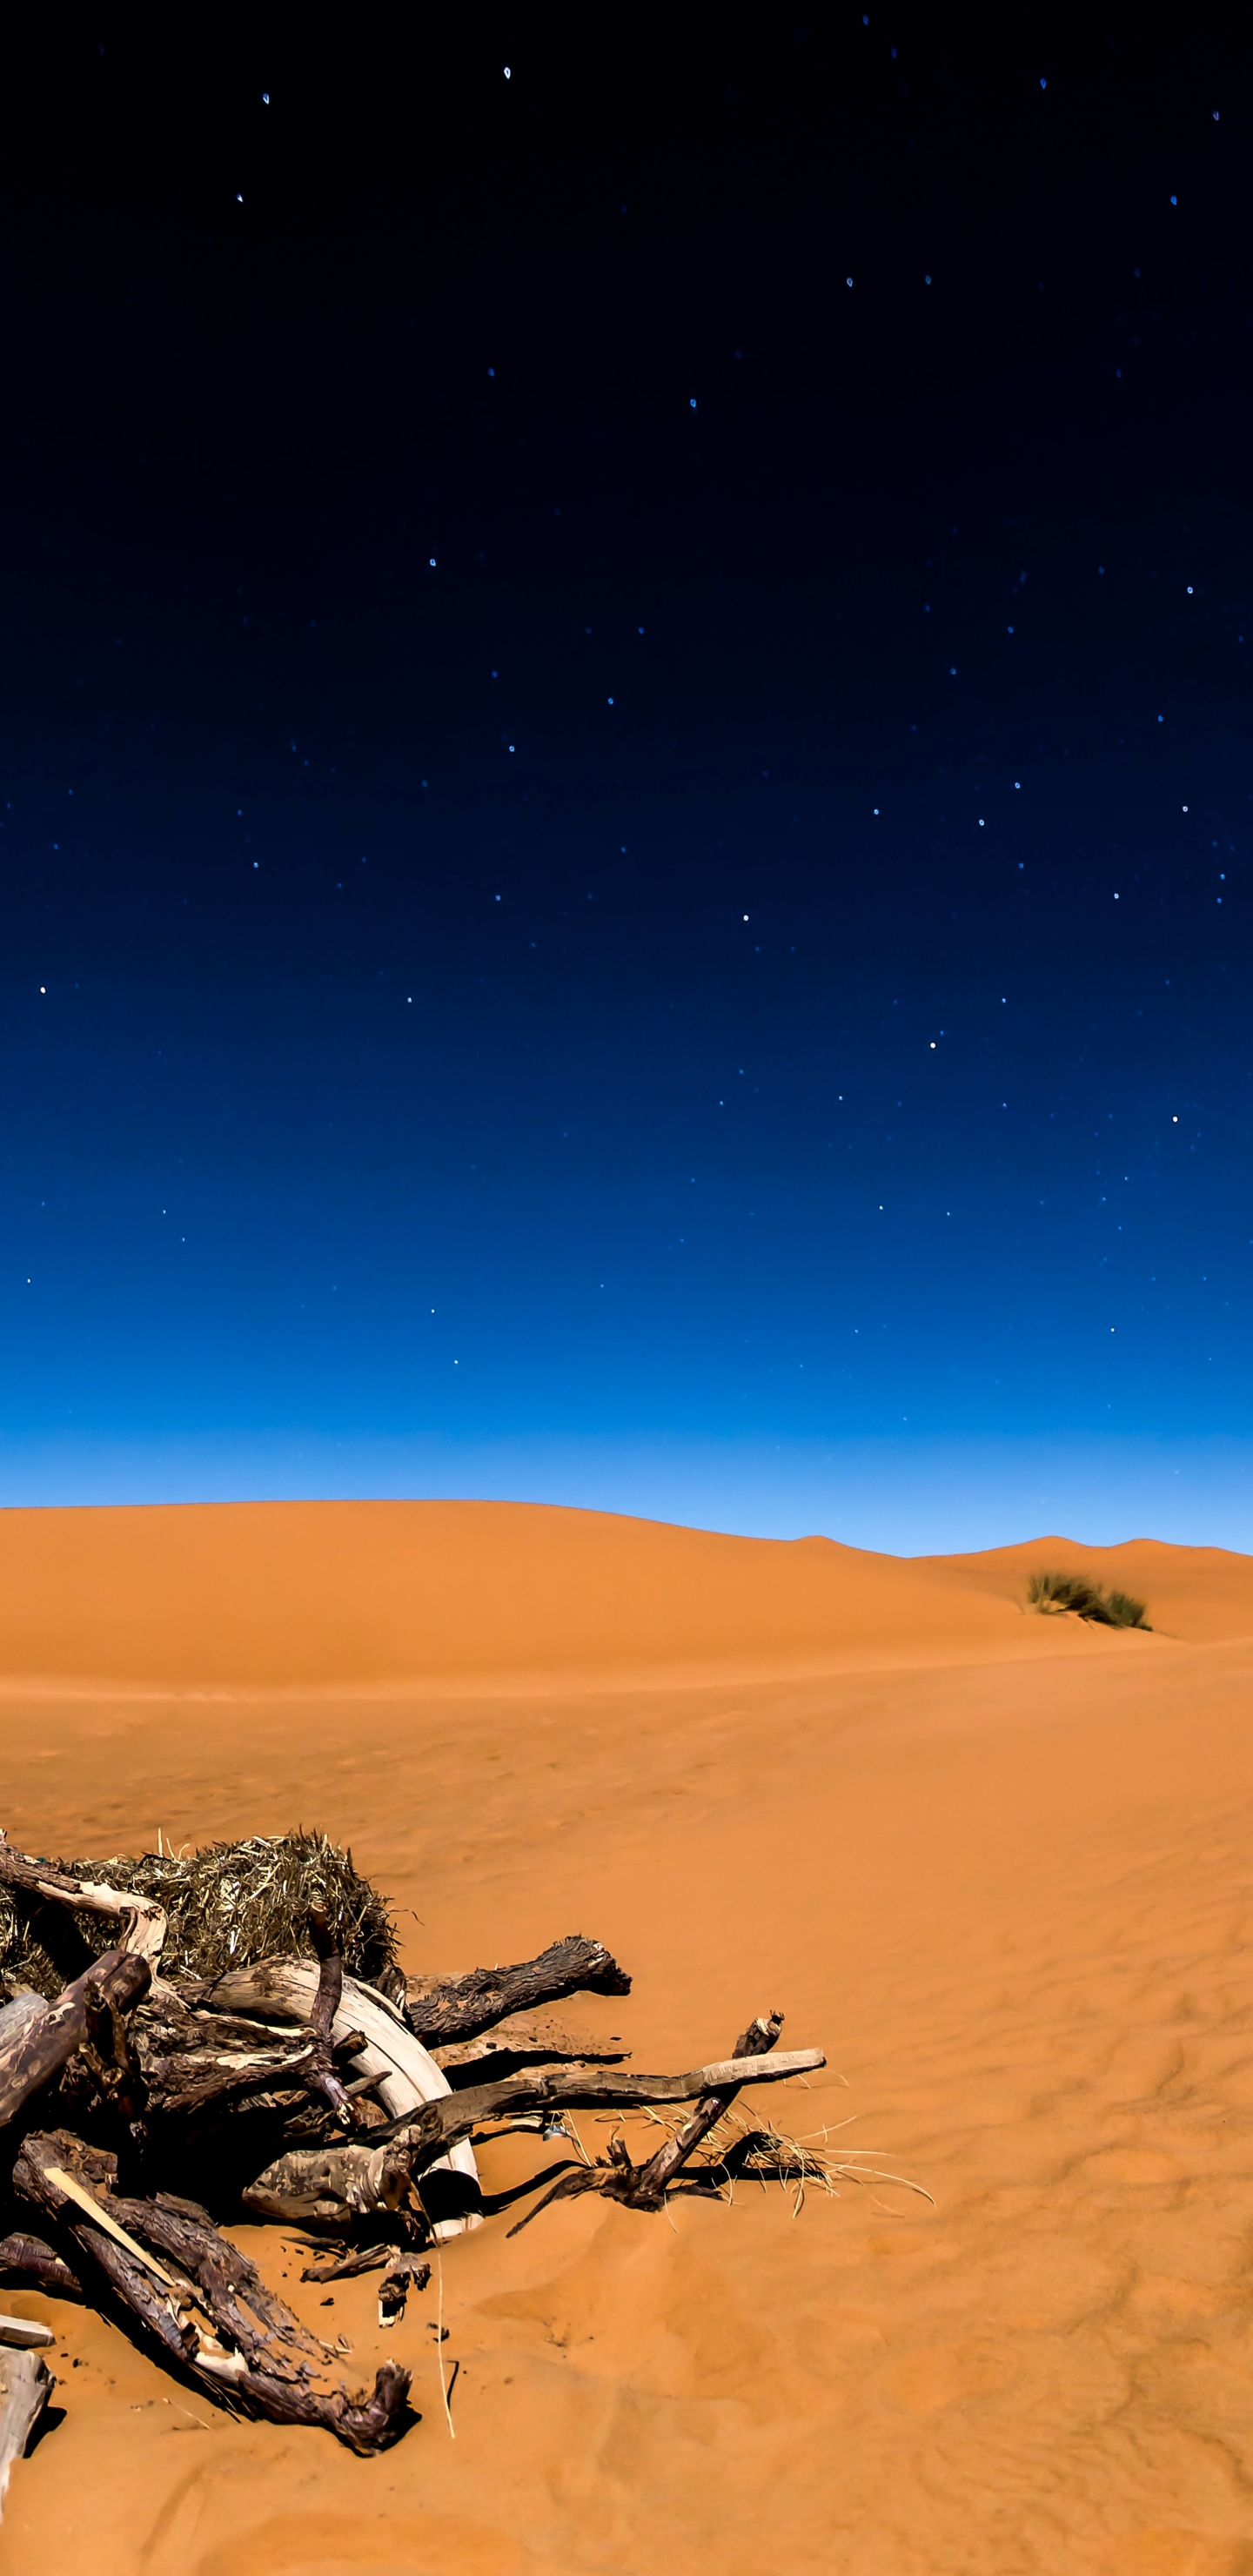 Descarga gratuita de fondo de pantalla para móvil de Noche, Arena, Desierto, Madera, Cielo Estrellado, Tierra/naturaleza.